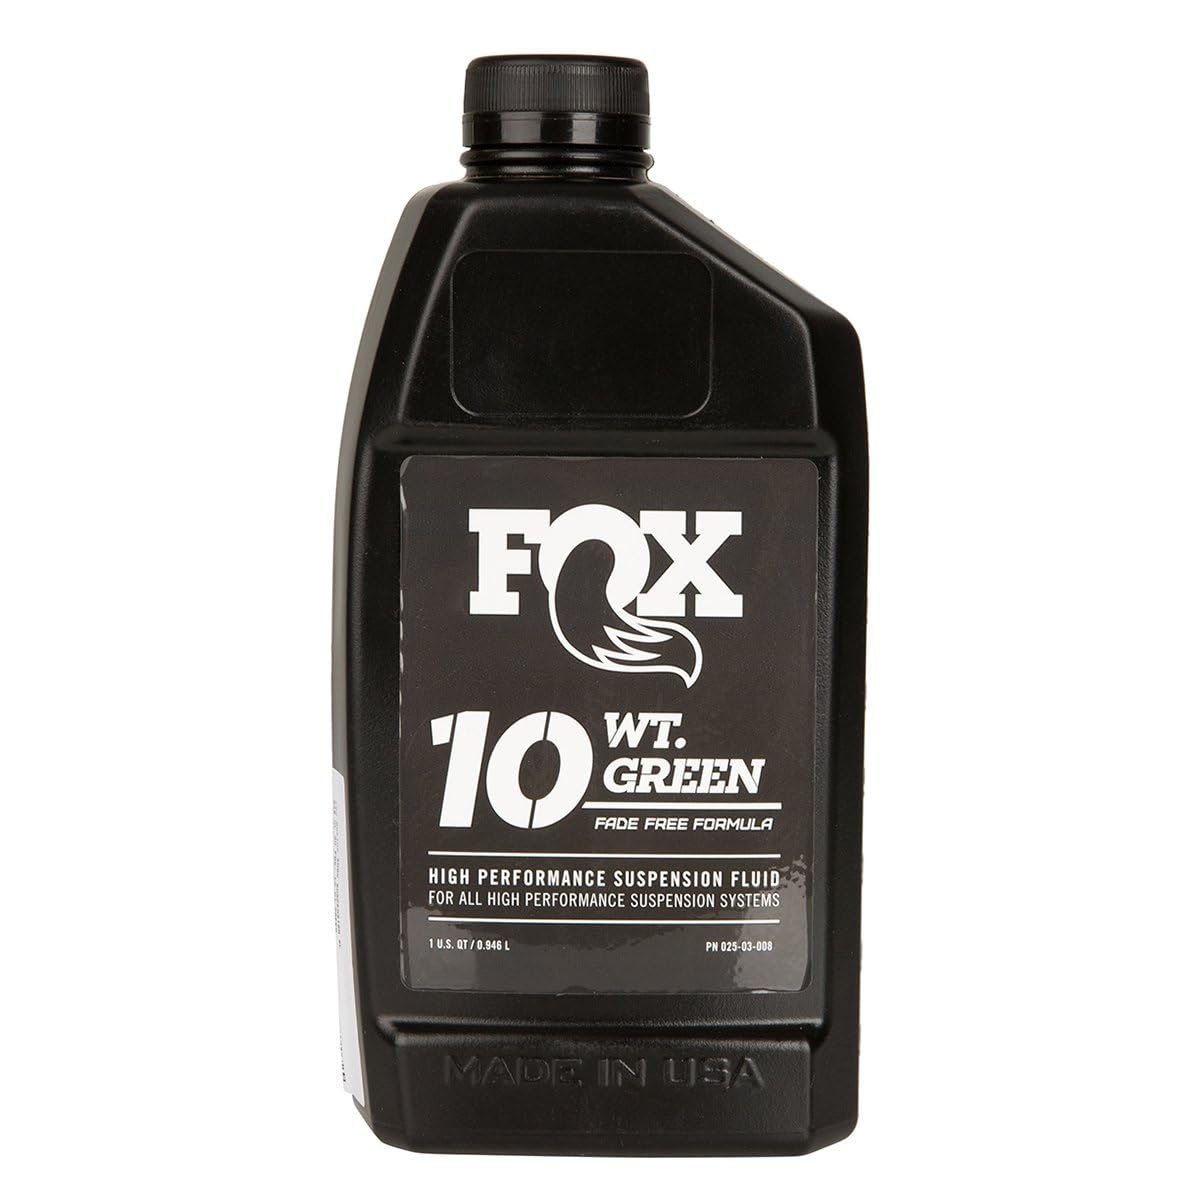 Fox Aceite SAE 10 WT Green 32 oz von Fox Racing Shox